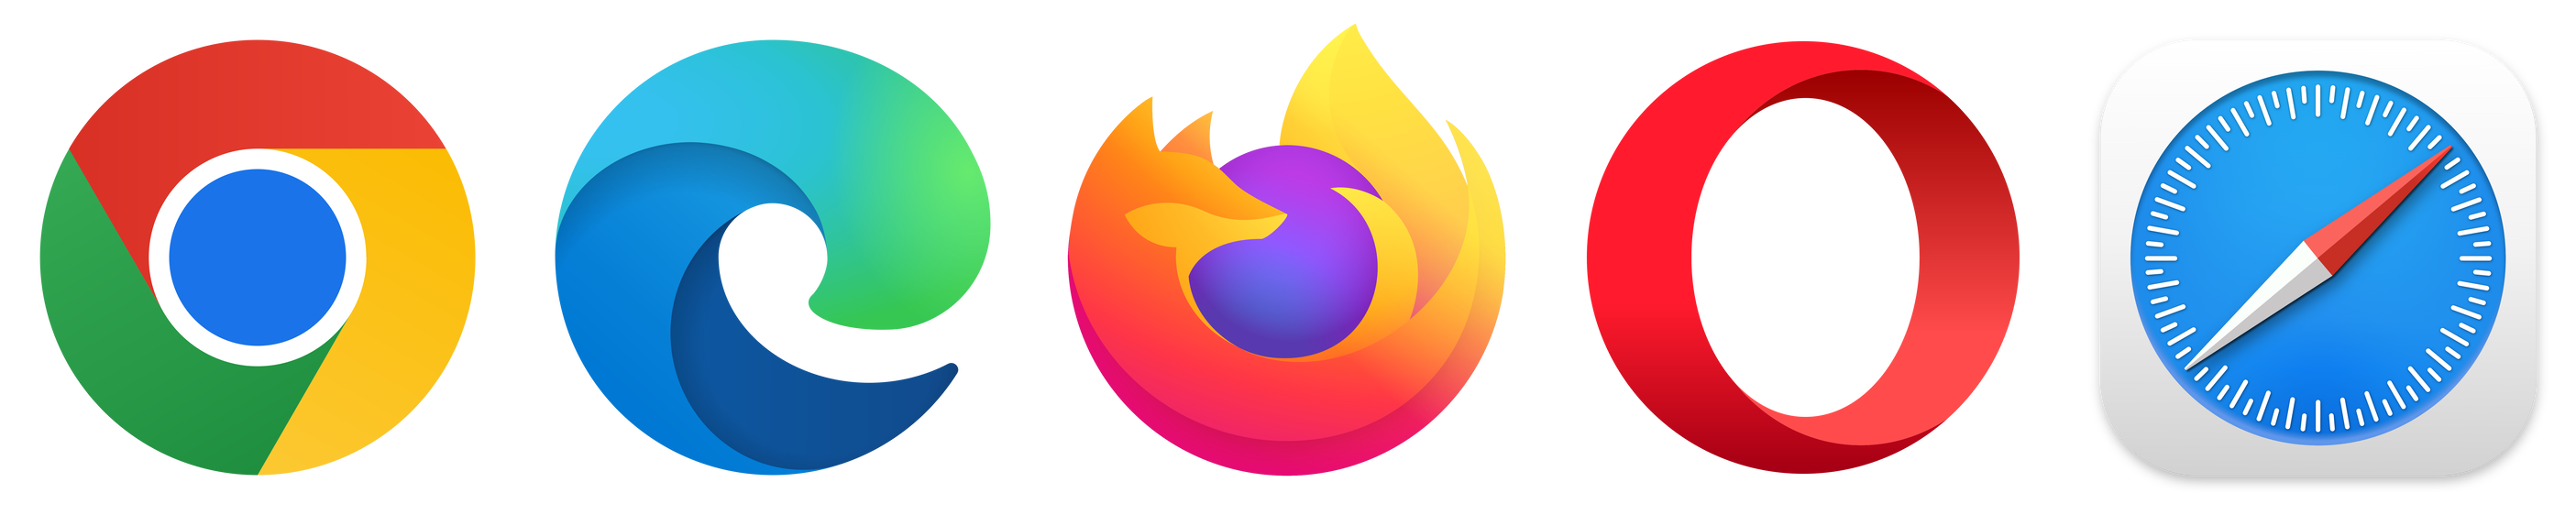 Browser Logos Open Source Agenda